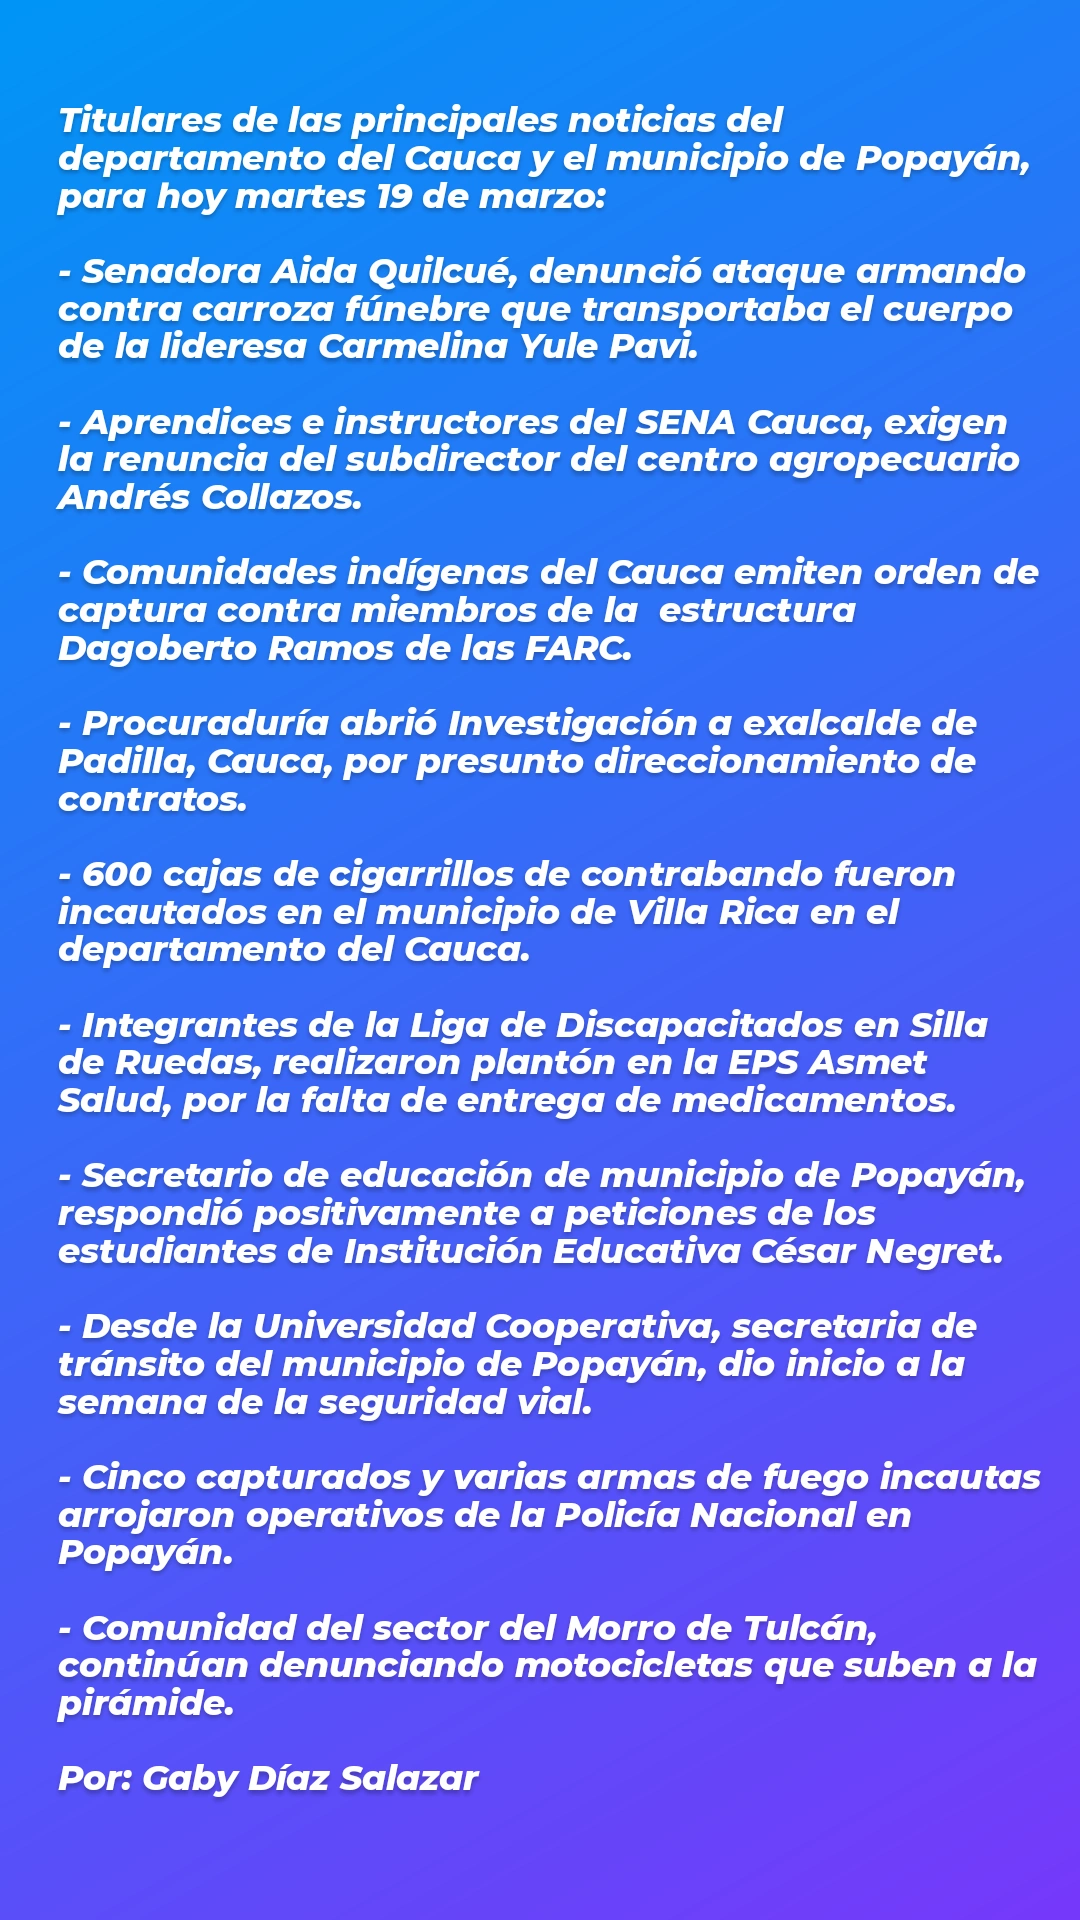 Principales noticias del departamento del Cauca y el municipio de Popayàn hoy 19 de marzo.